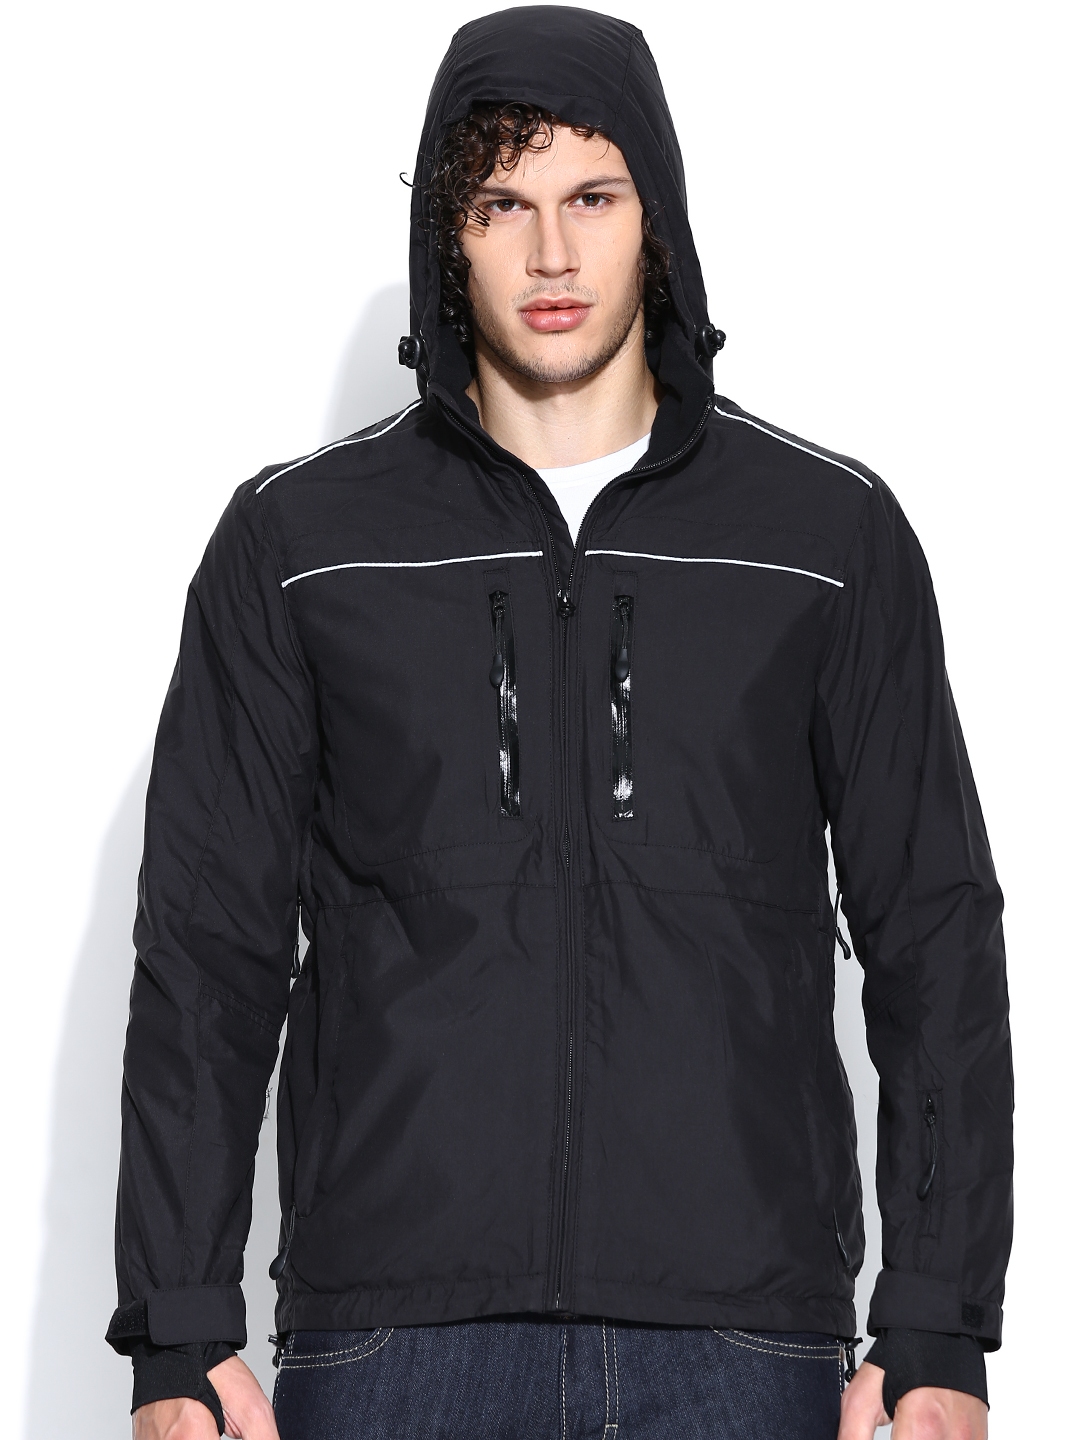 Buy Wrangler Black Hooded Slim Fit Jacket - Jackets for Men 957428 | Myntra